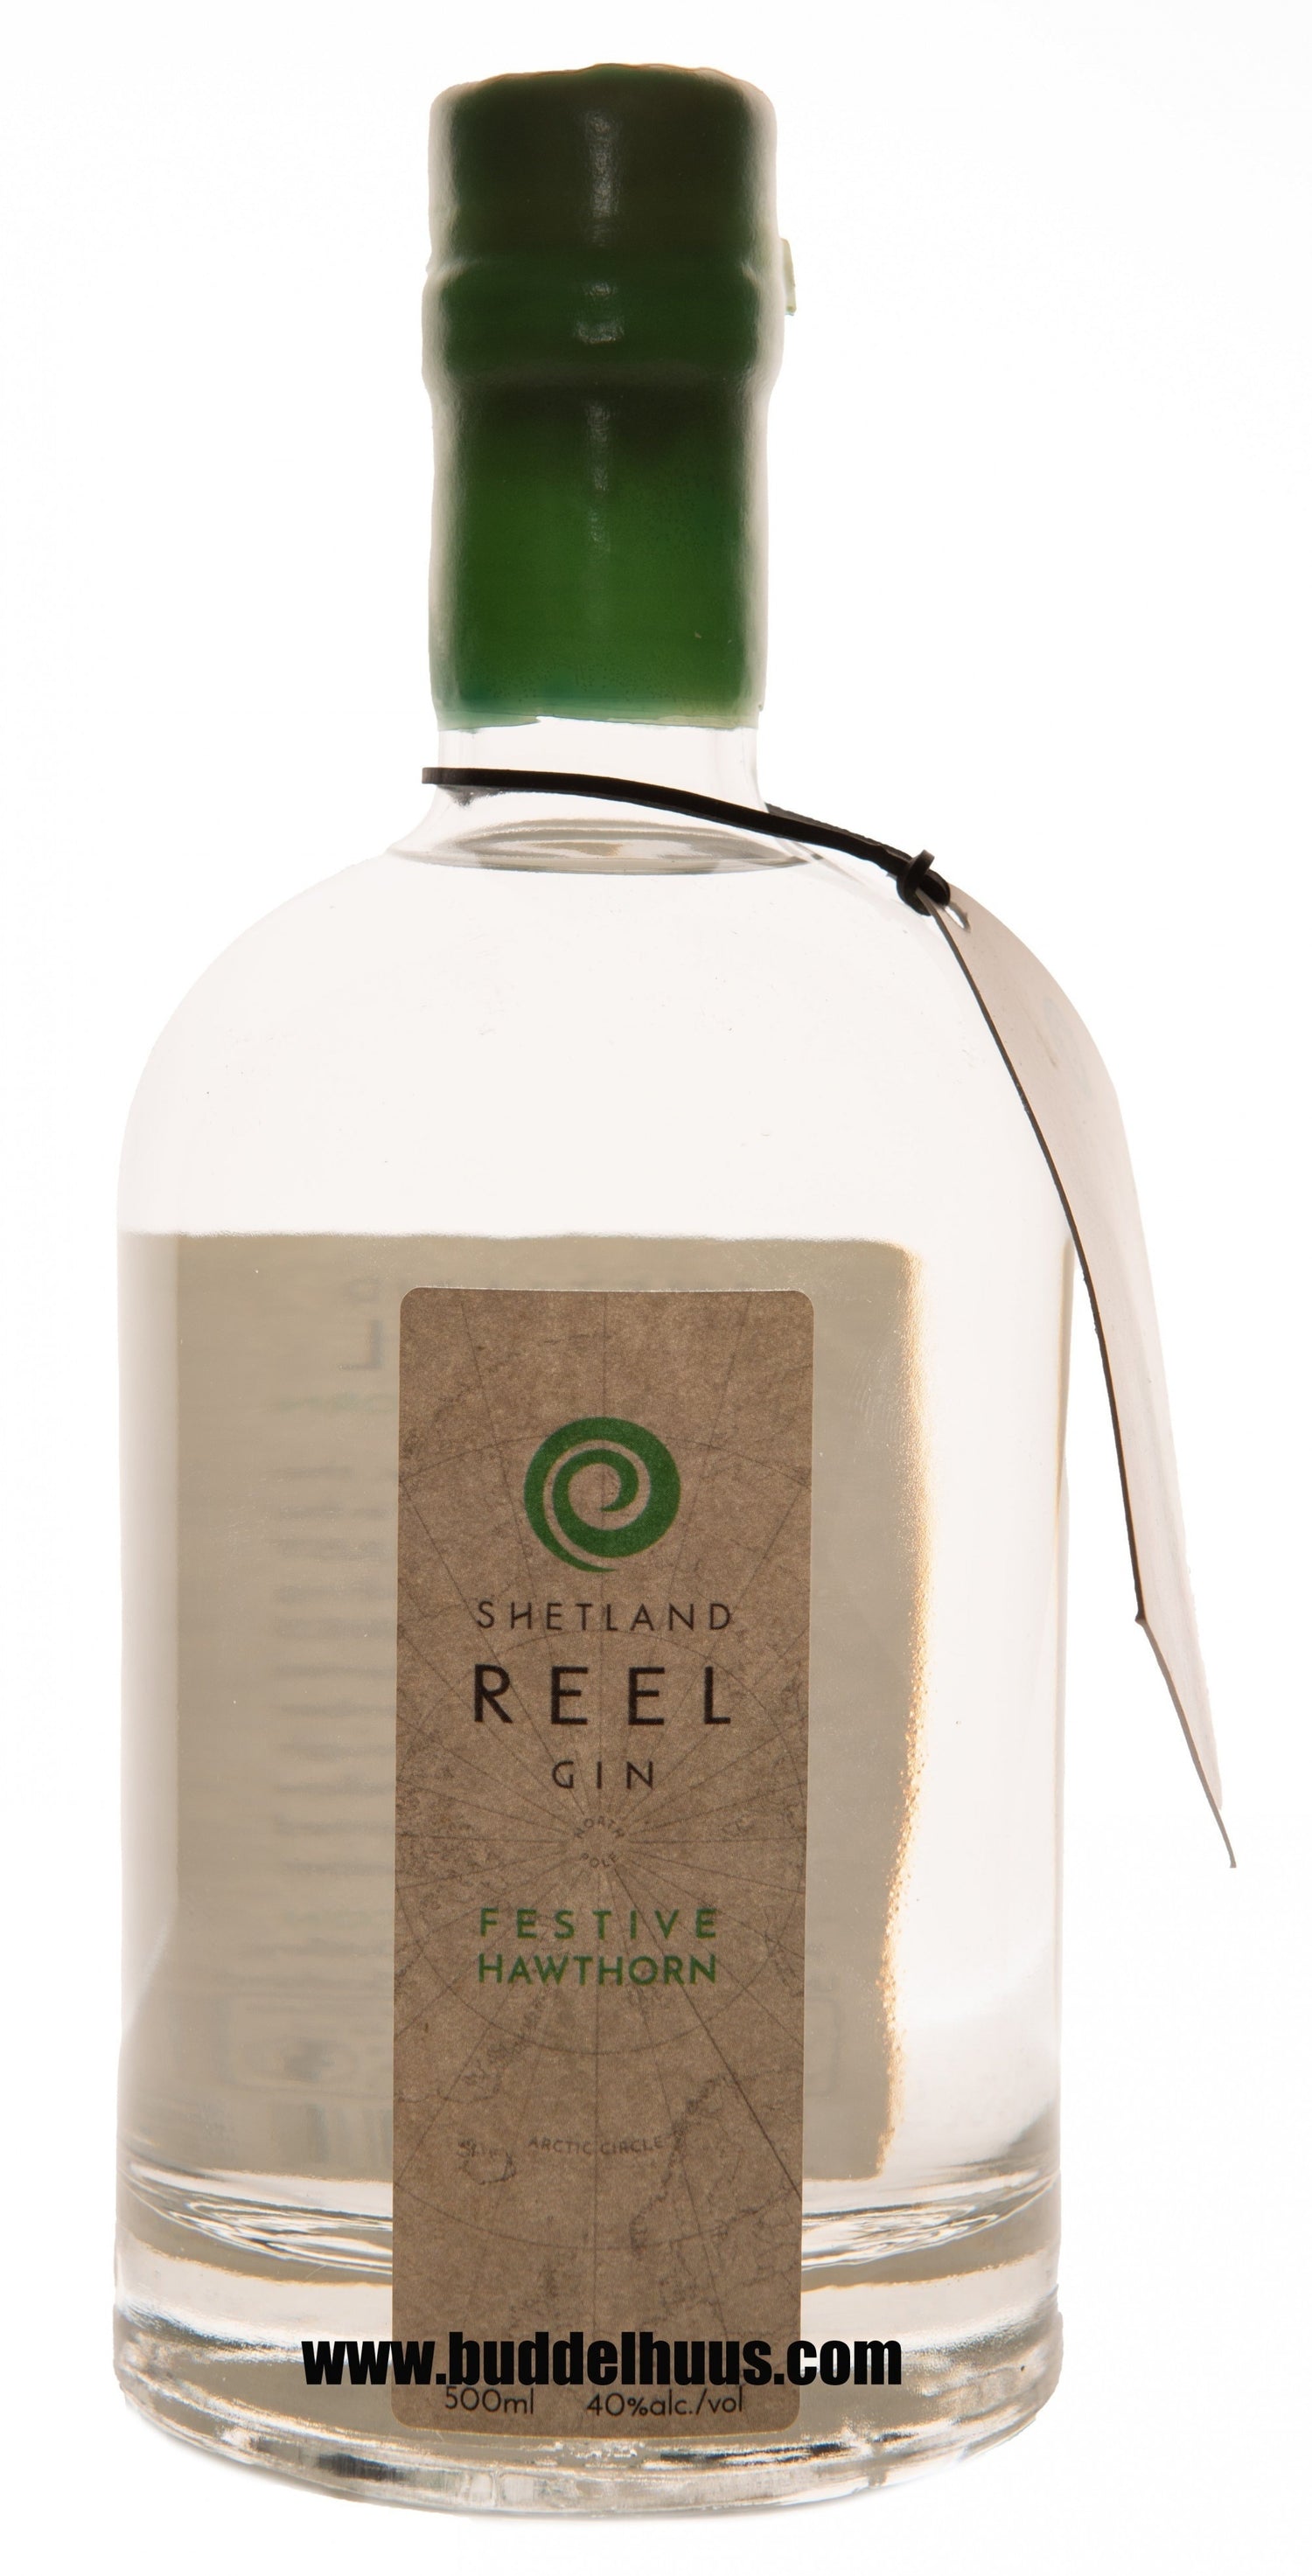 Shetland Reel Gin Hawthorn limited Edition